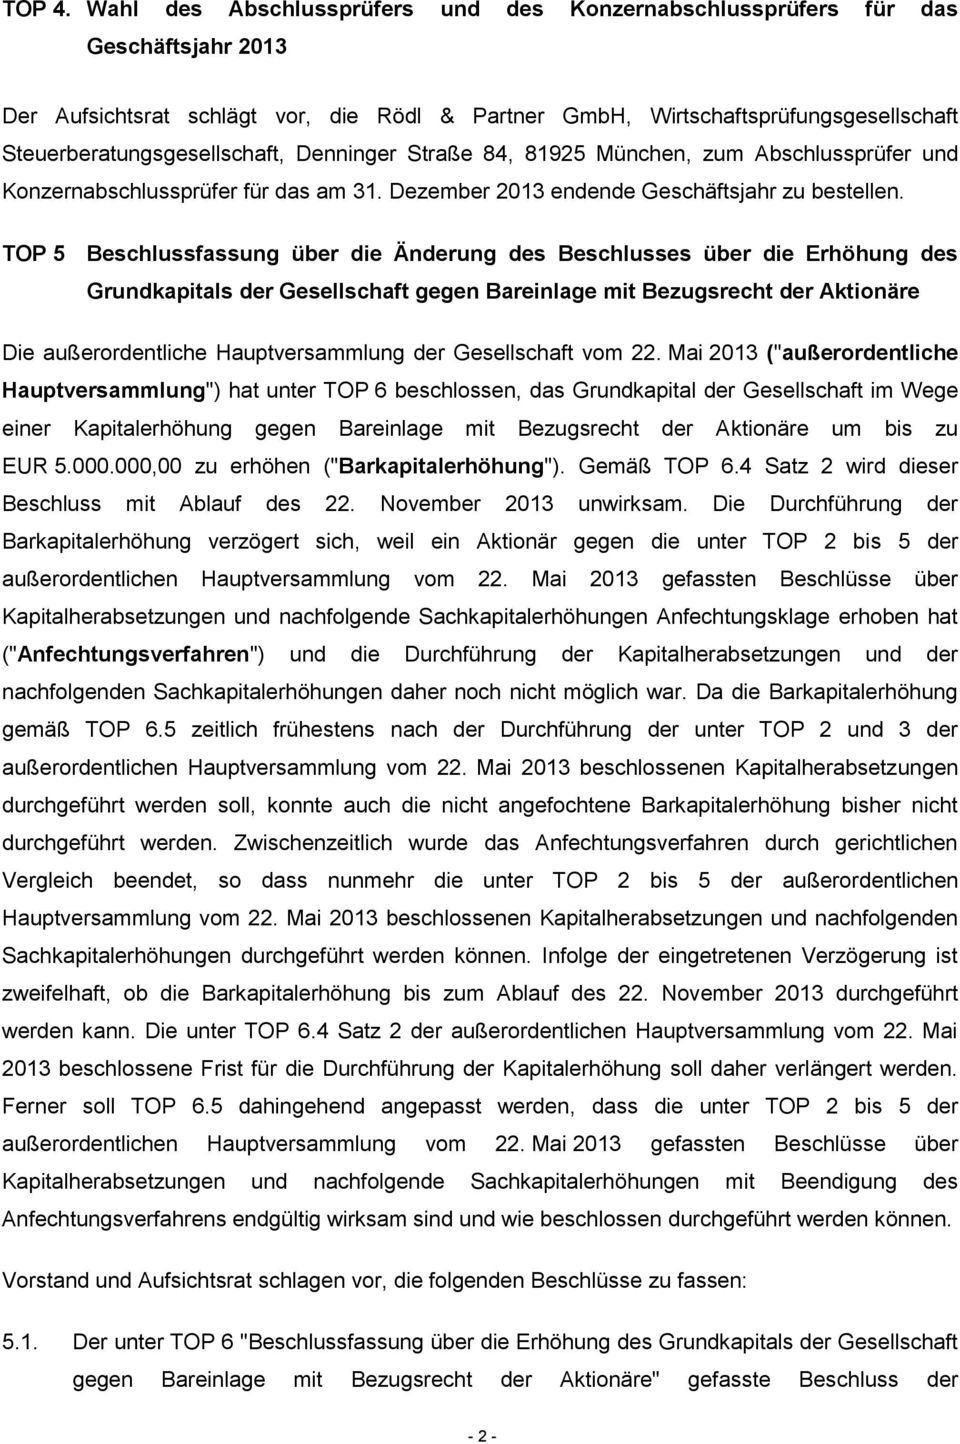 Steuerberatungsgesellschaft, Denninger Straße 84, 81925 München, zum Abschlussprüfer und Konzernabschlussprüfer für das am 31. Dezember 2013 endende Geschäftsjahr zu bestellen.